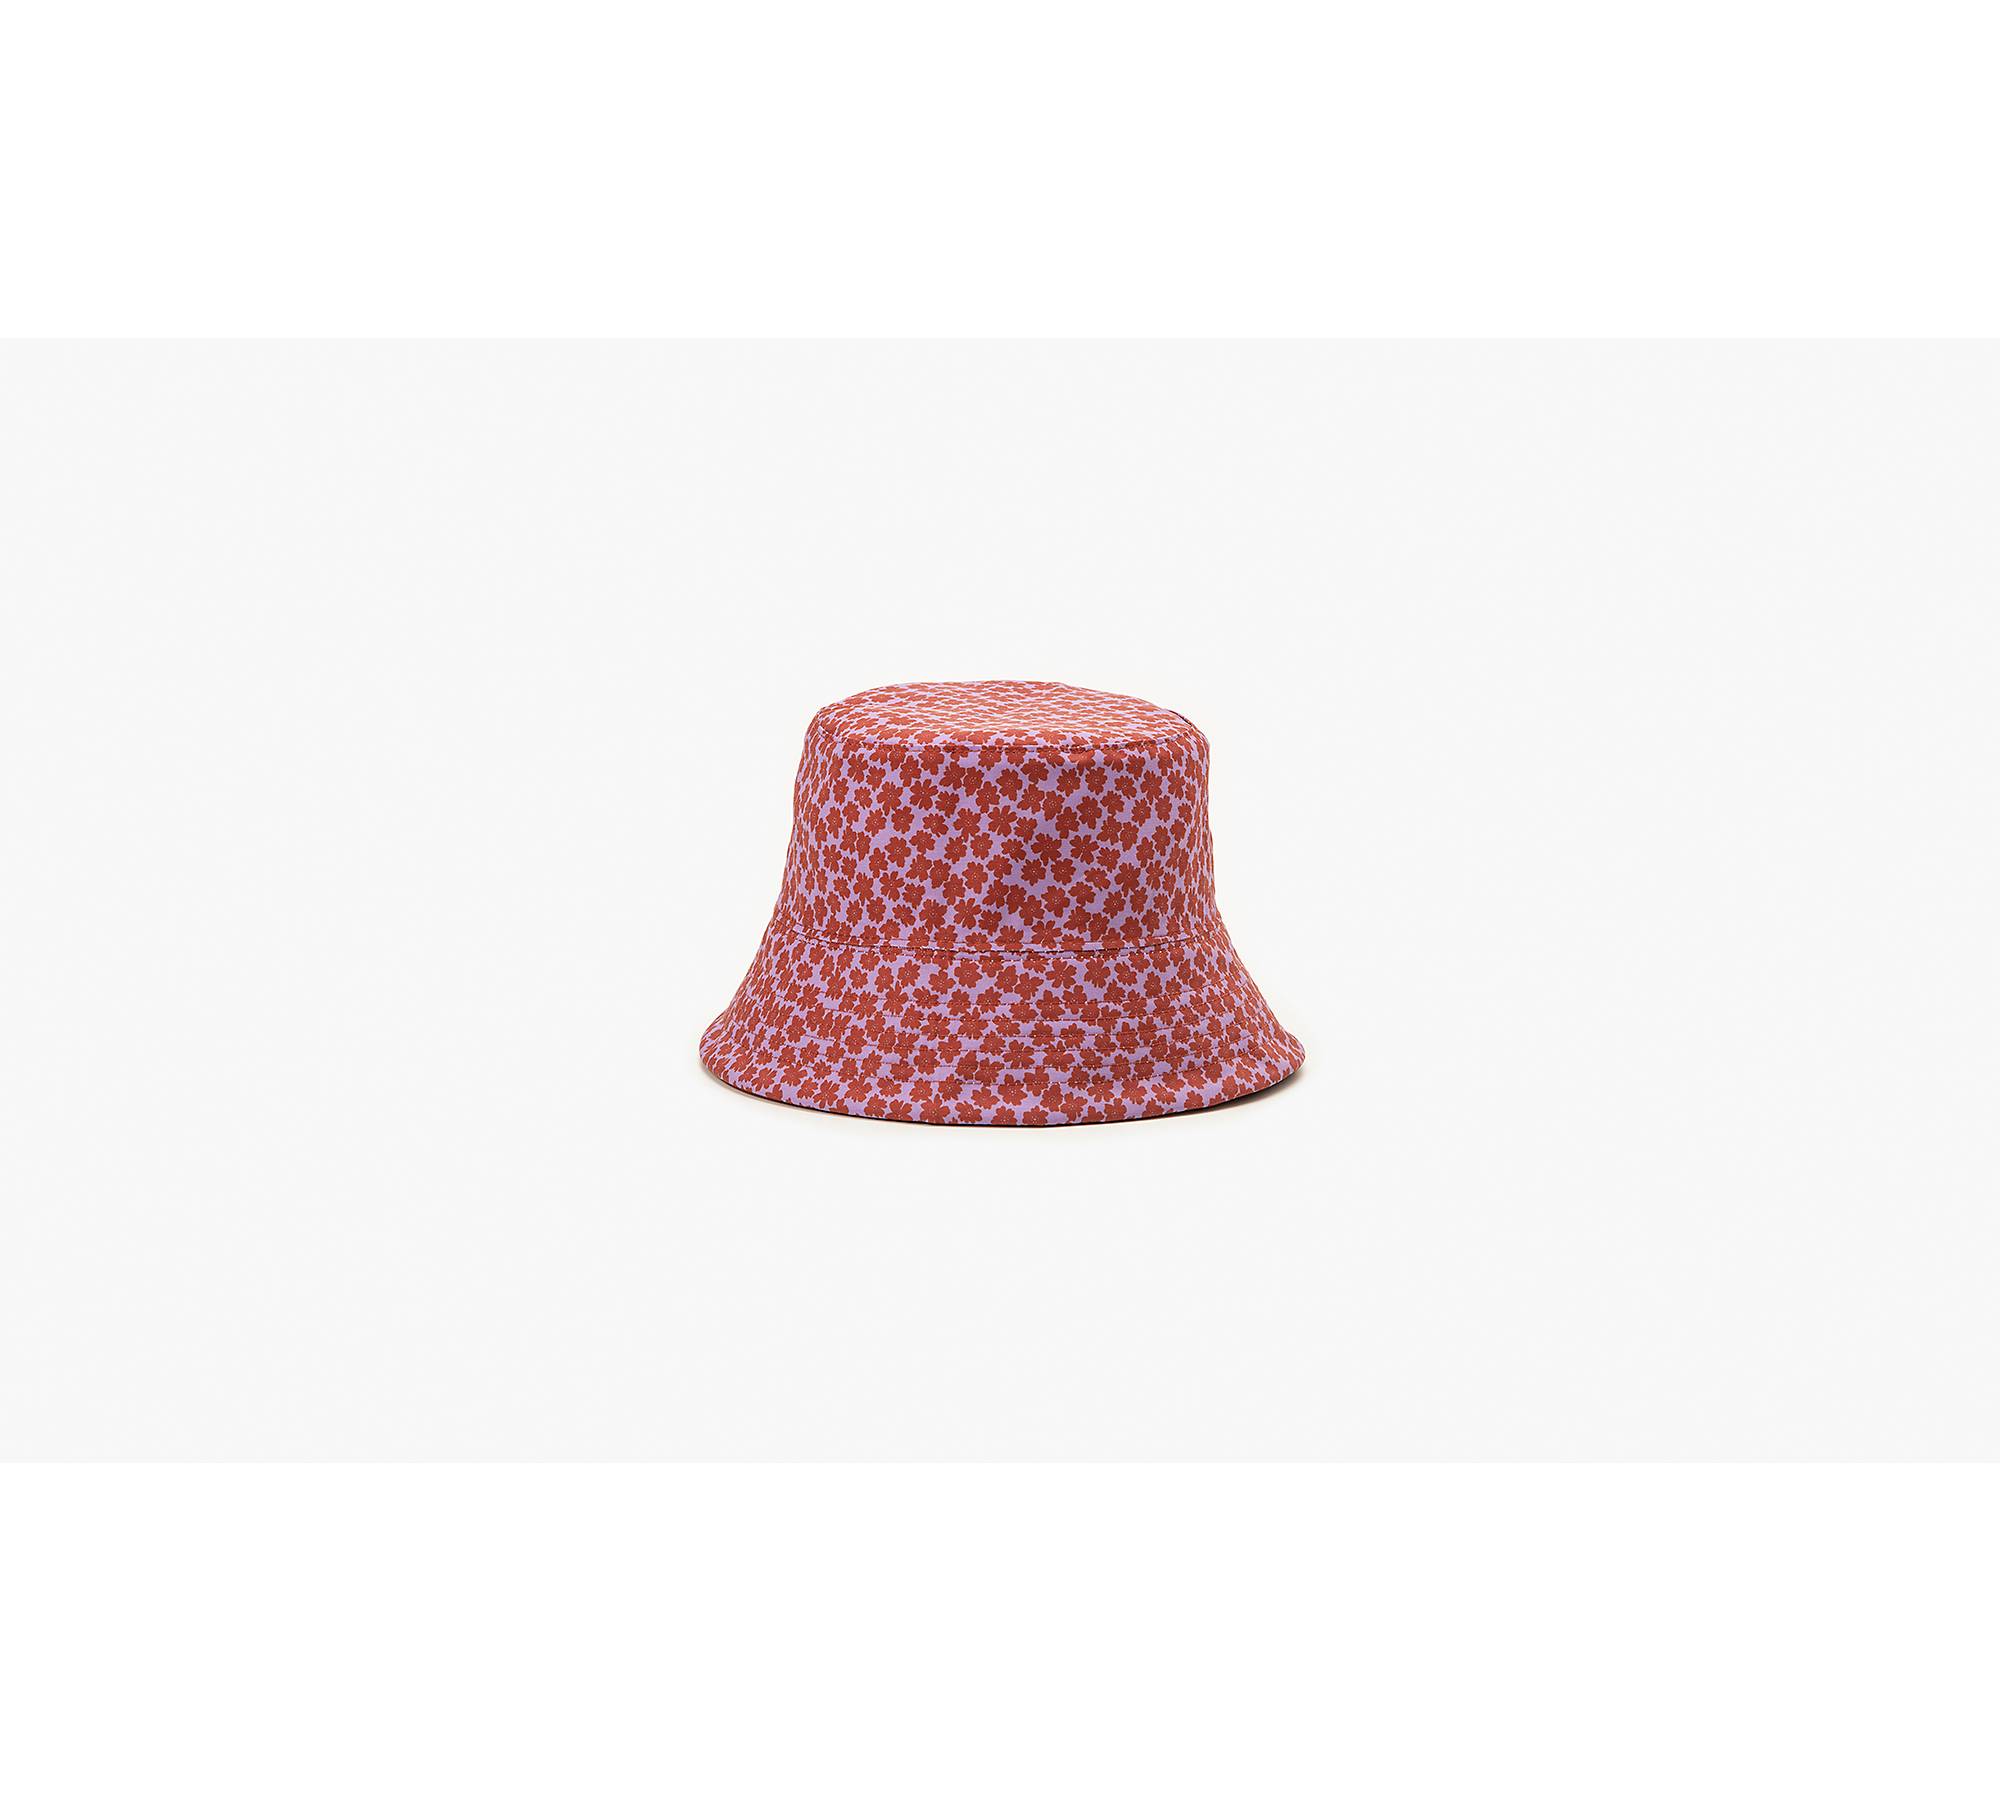 Dior Men's Reversible Oblique Bucket Hat